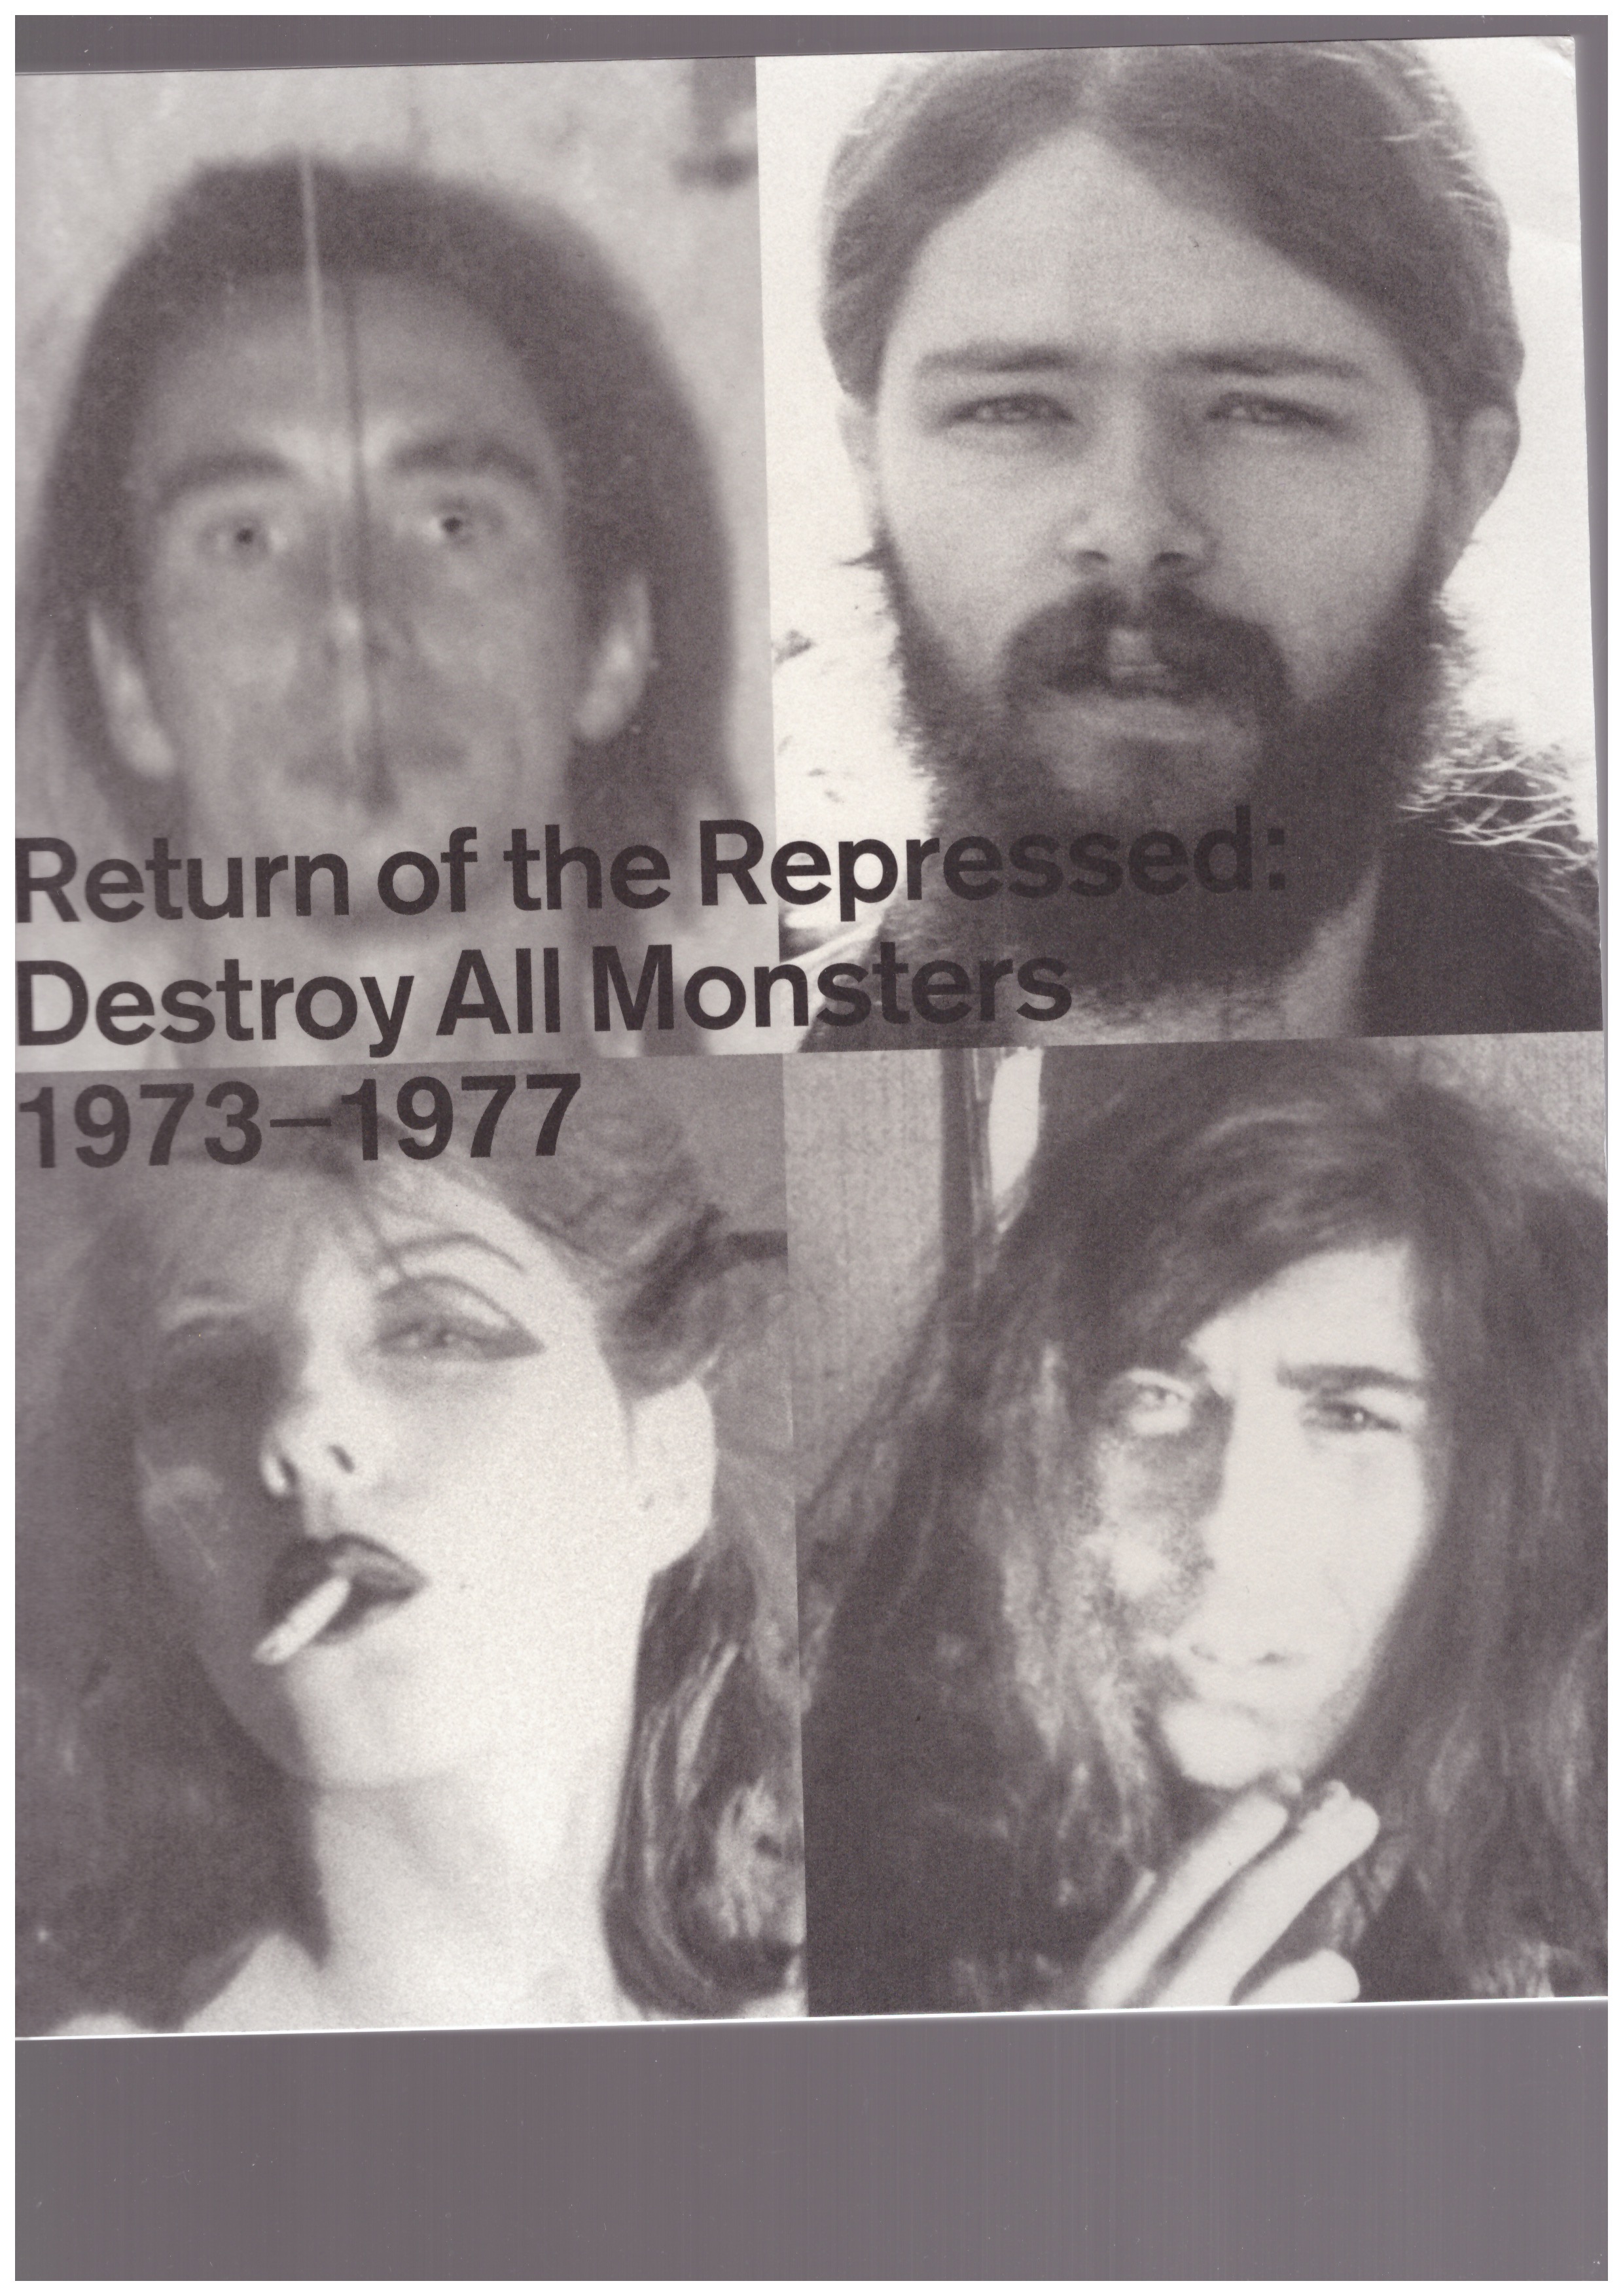 KELLEY, Mike; NADEL, Dan - Return of the Repressed : Destroy All Monsters 1973-1977